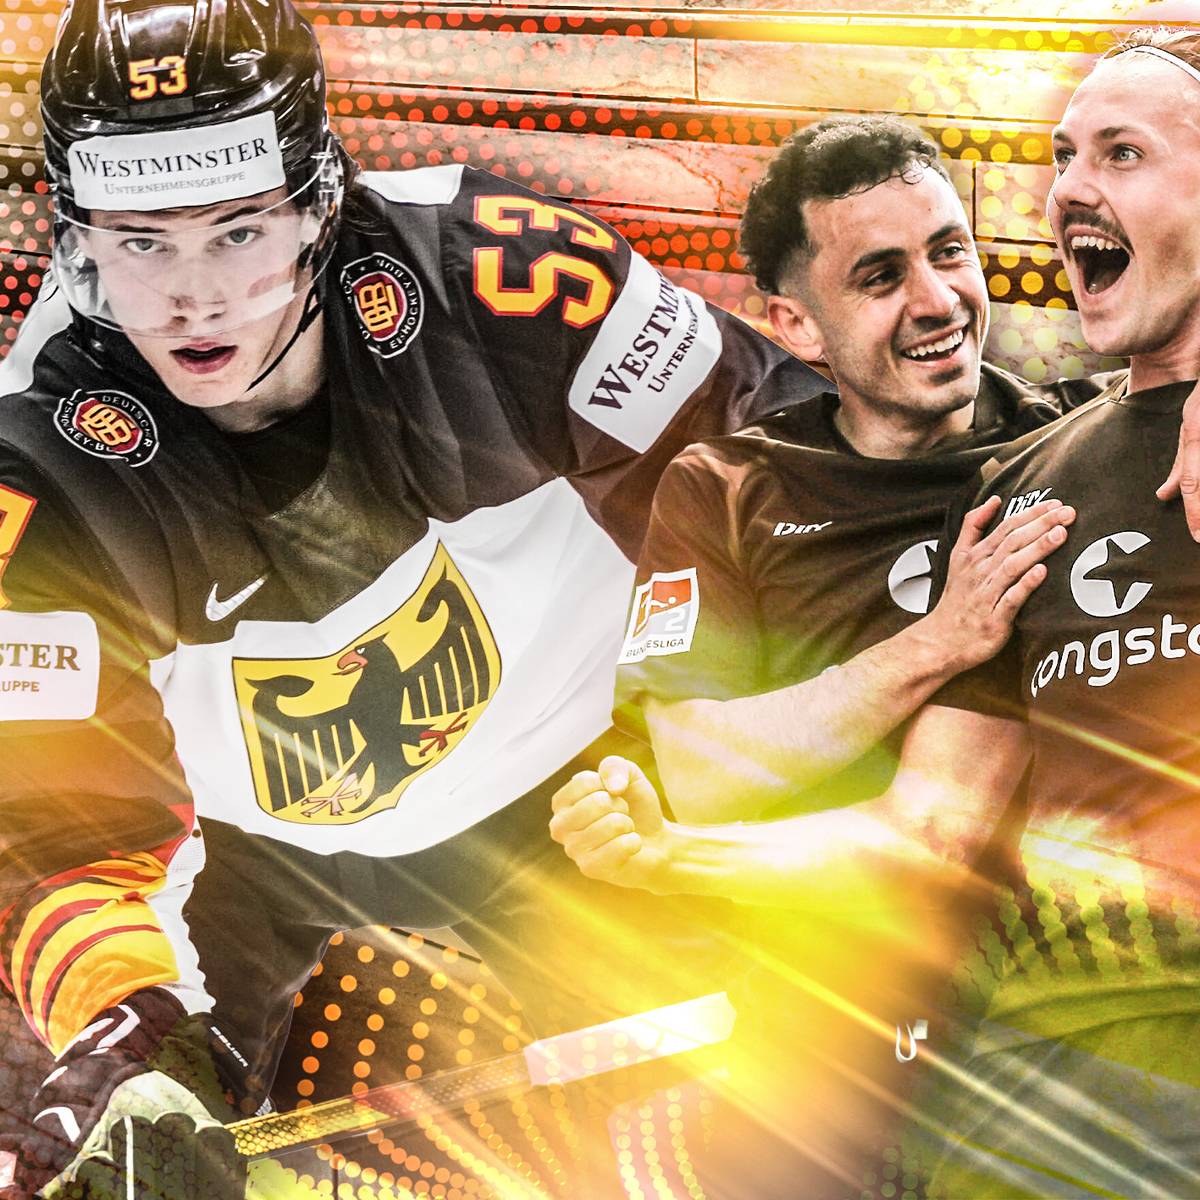 Super-Samstag auf SPORT1 mit Eishockey-WM, Bundesliga-Finale im Volleyball, XFL-Showdown und Top-Spiel der 2